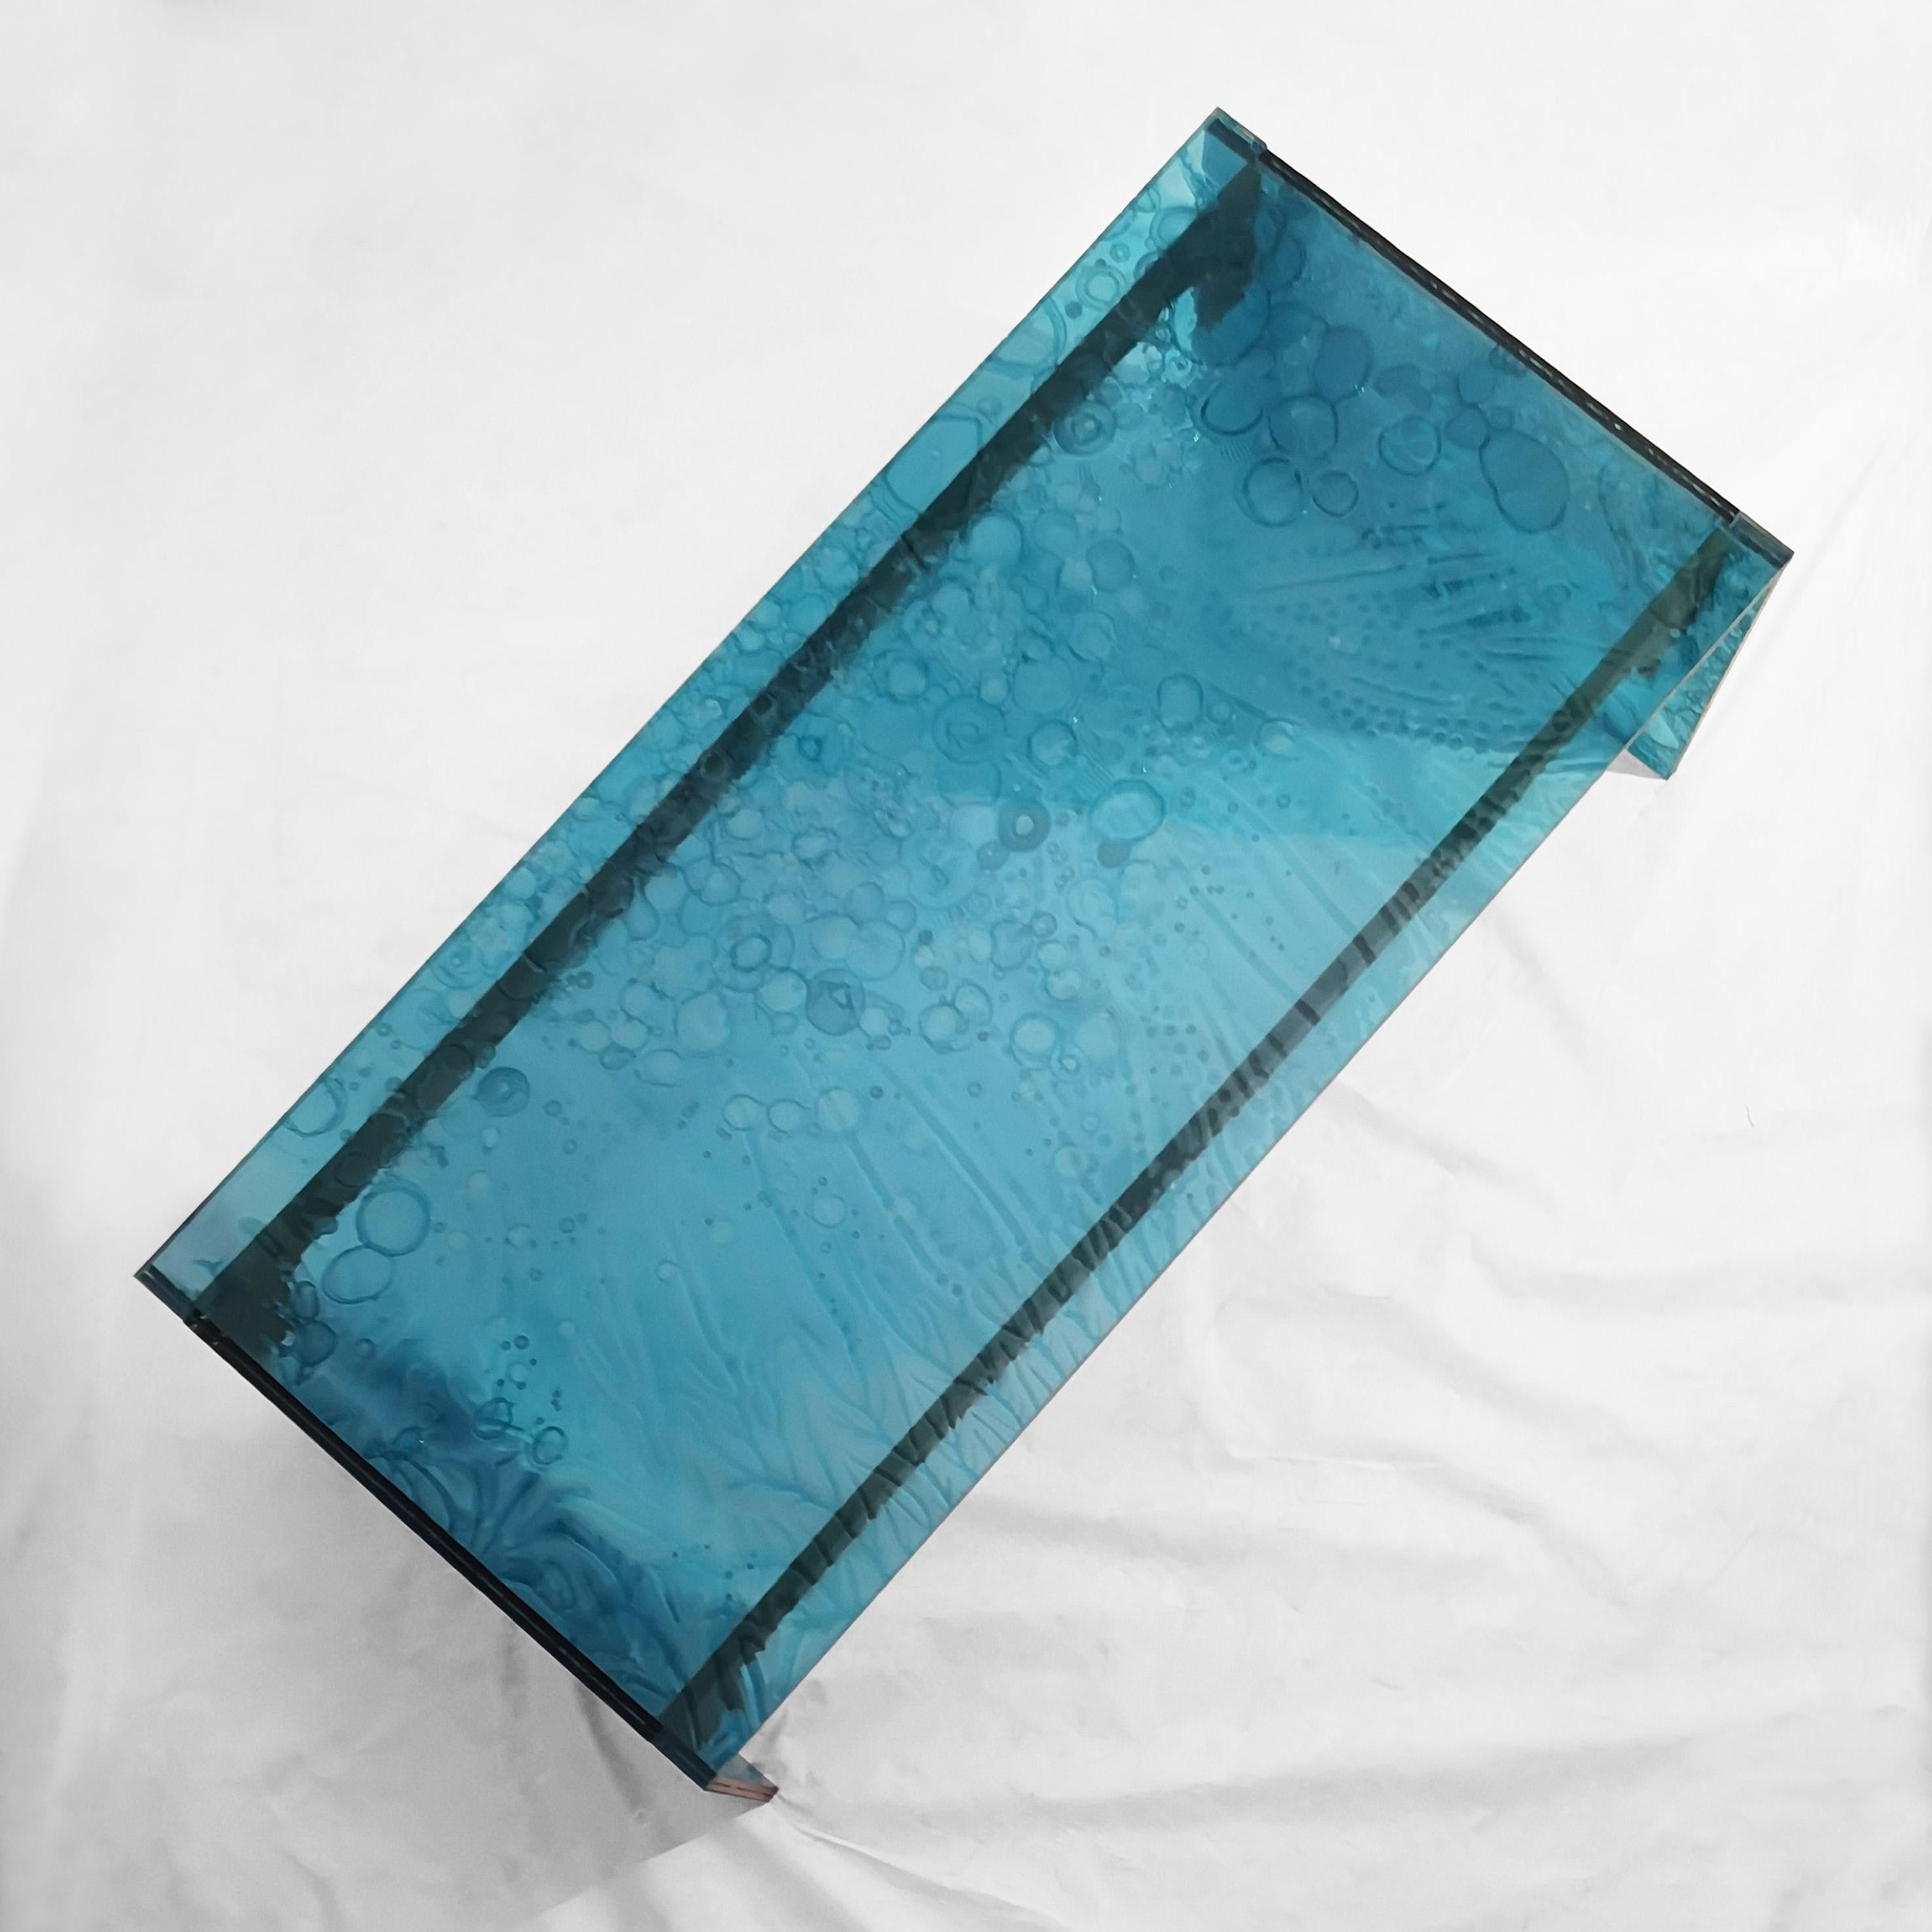 Table basse, fabriquée à la main en acrylique vert transparent coloré avec une technologie innovante.
Le matériau est fabriqué par la fusion de trois plaques, dont l'une
centre partiellement guéri.
Ce processus crée des effets uniques et